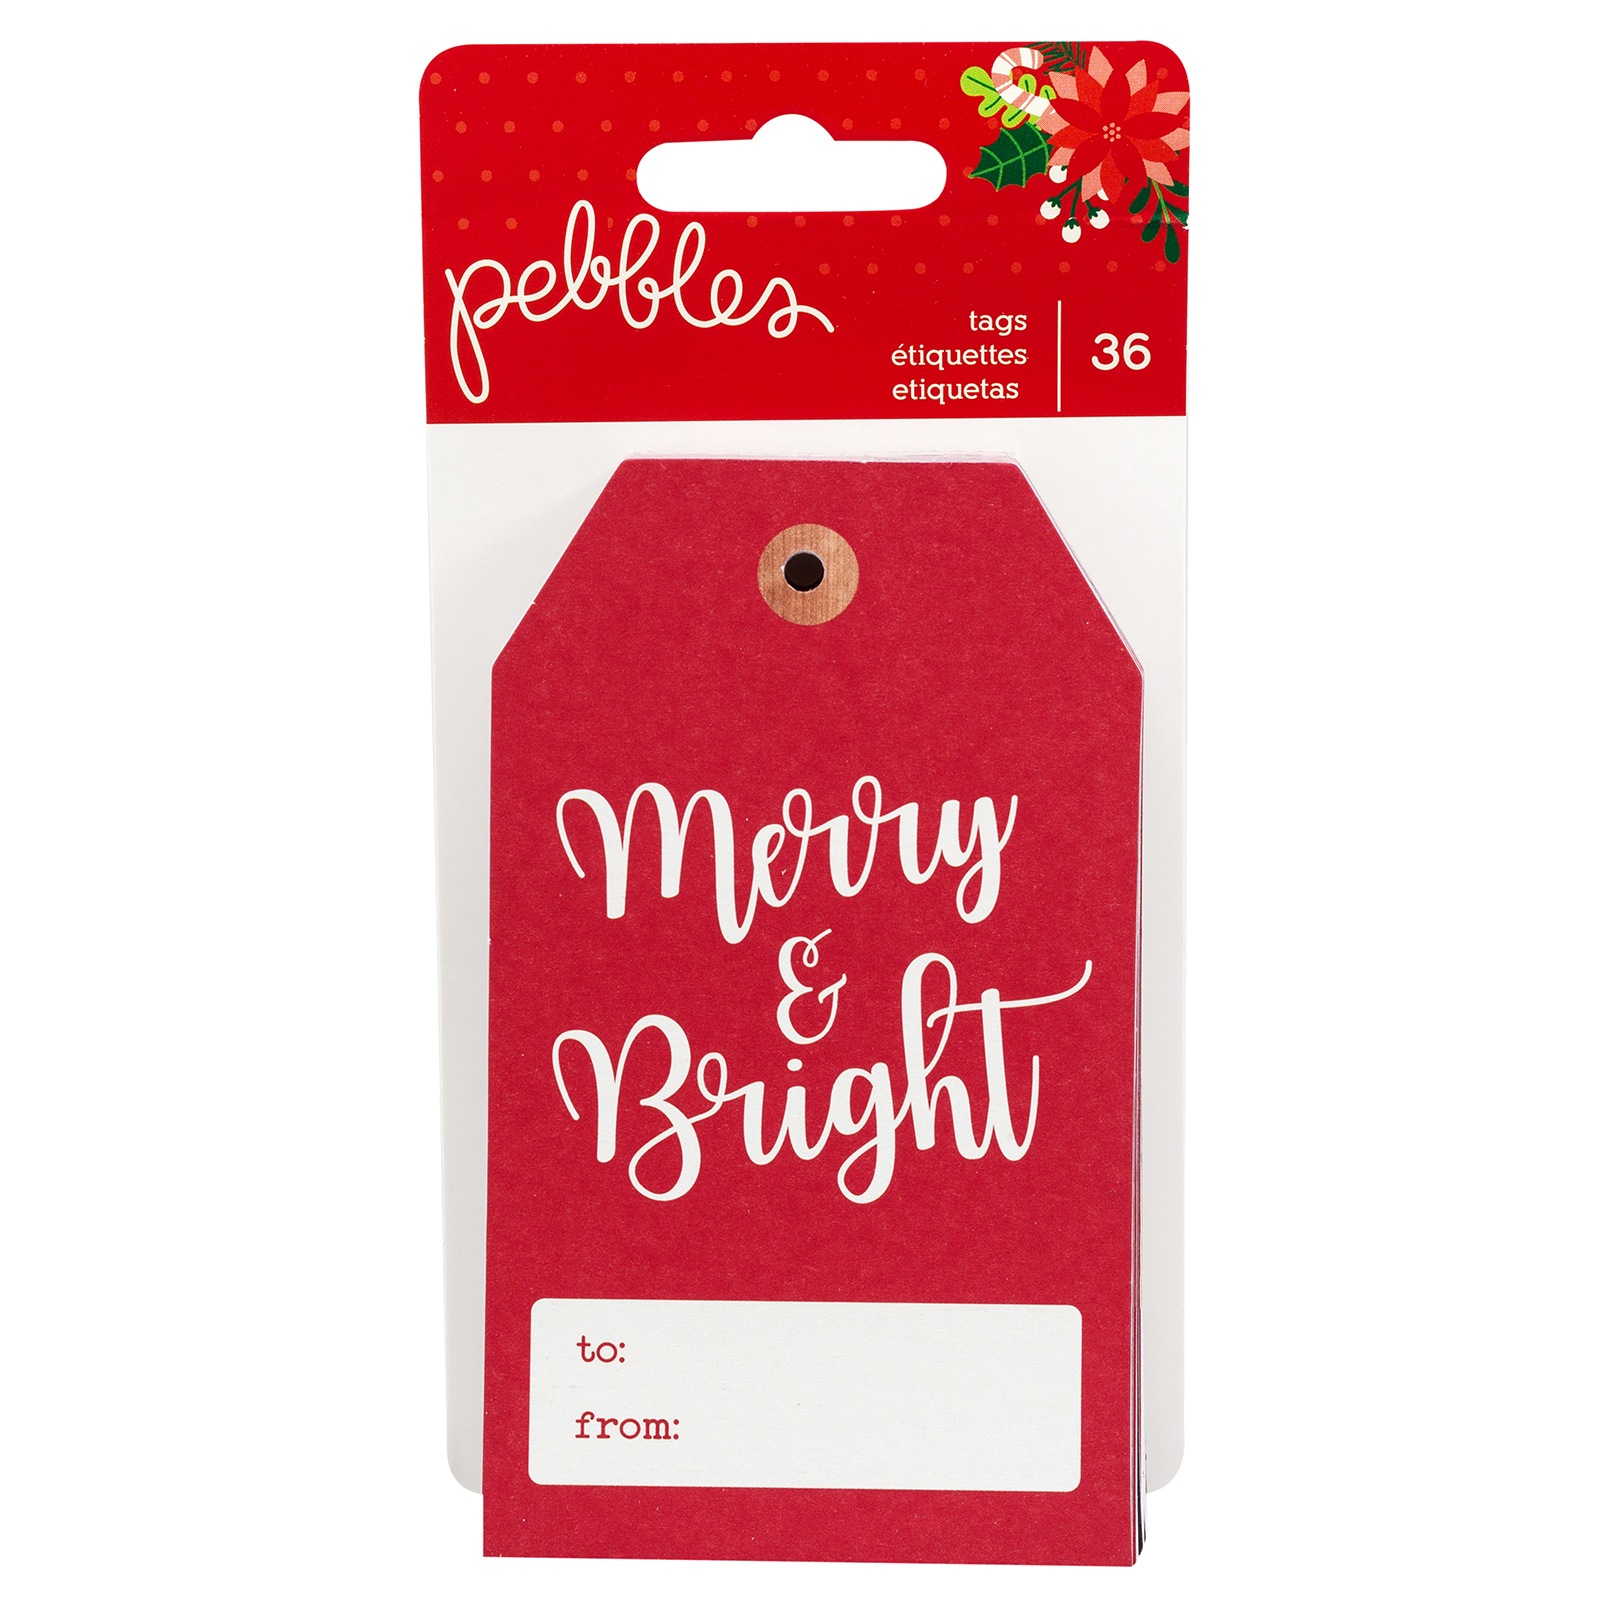 Pebbles • Cozy & bright tag pad x36